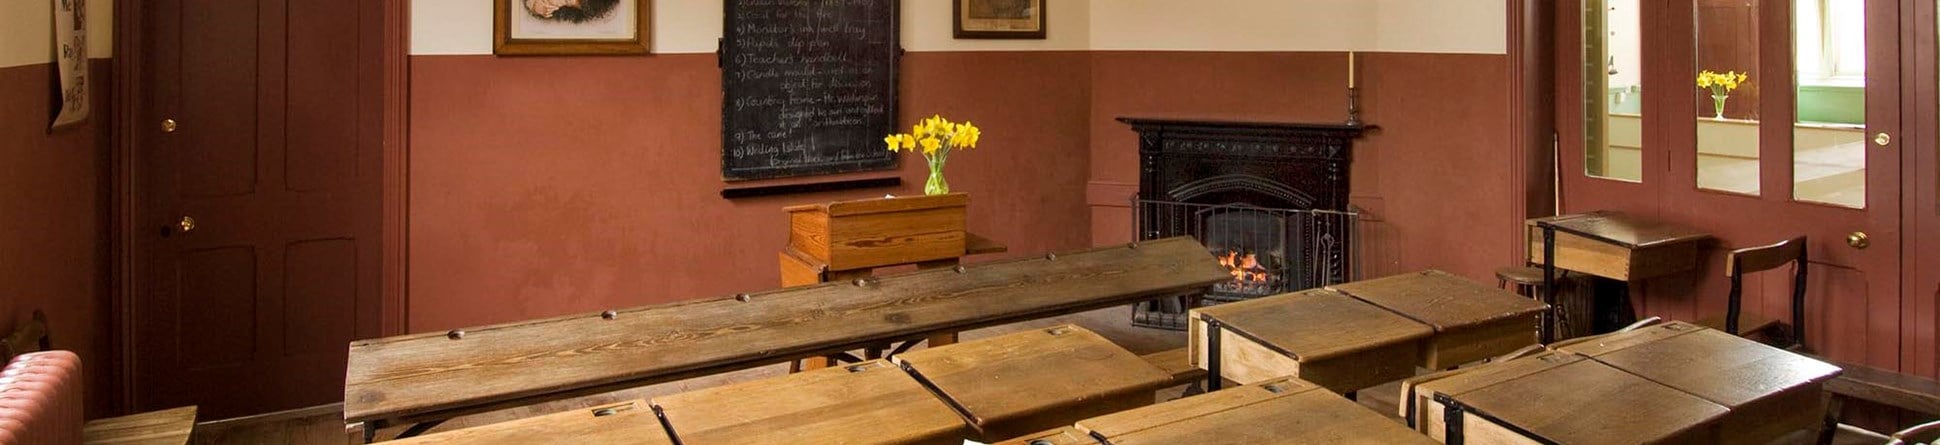 Restored Victorian schoolroom